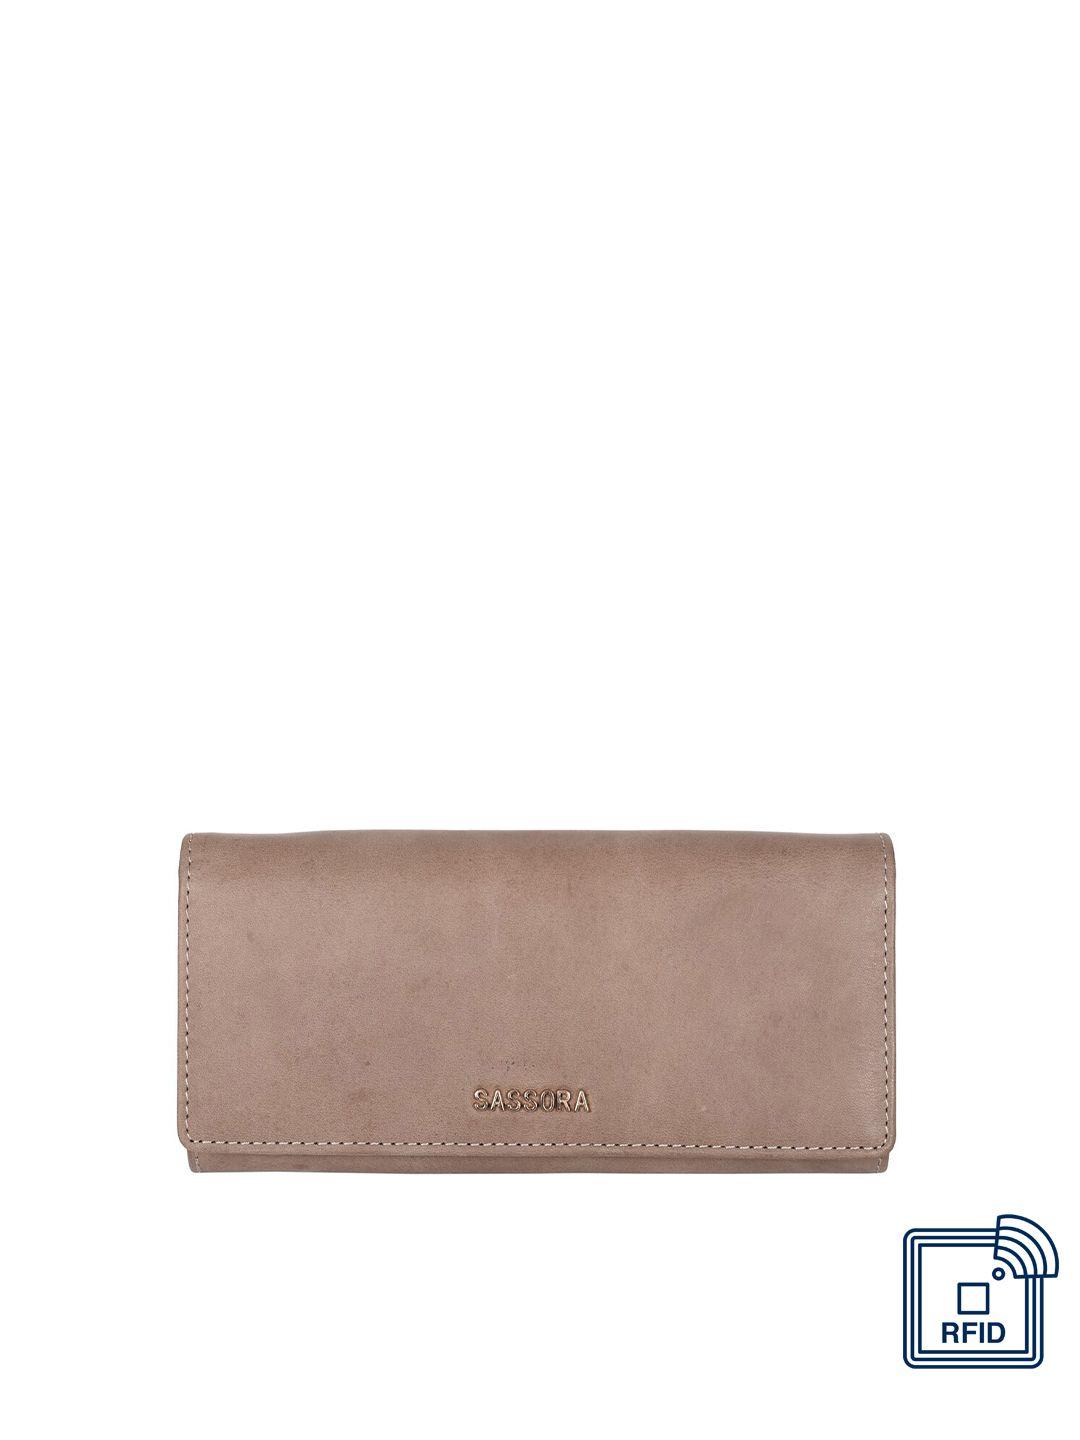 sassora women beige leather two fold wallet